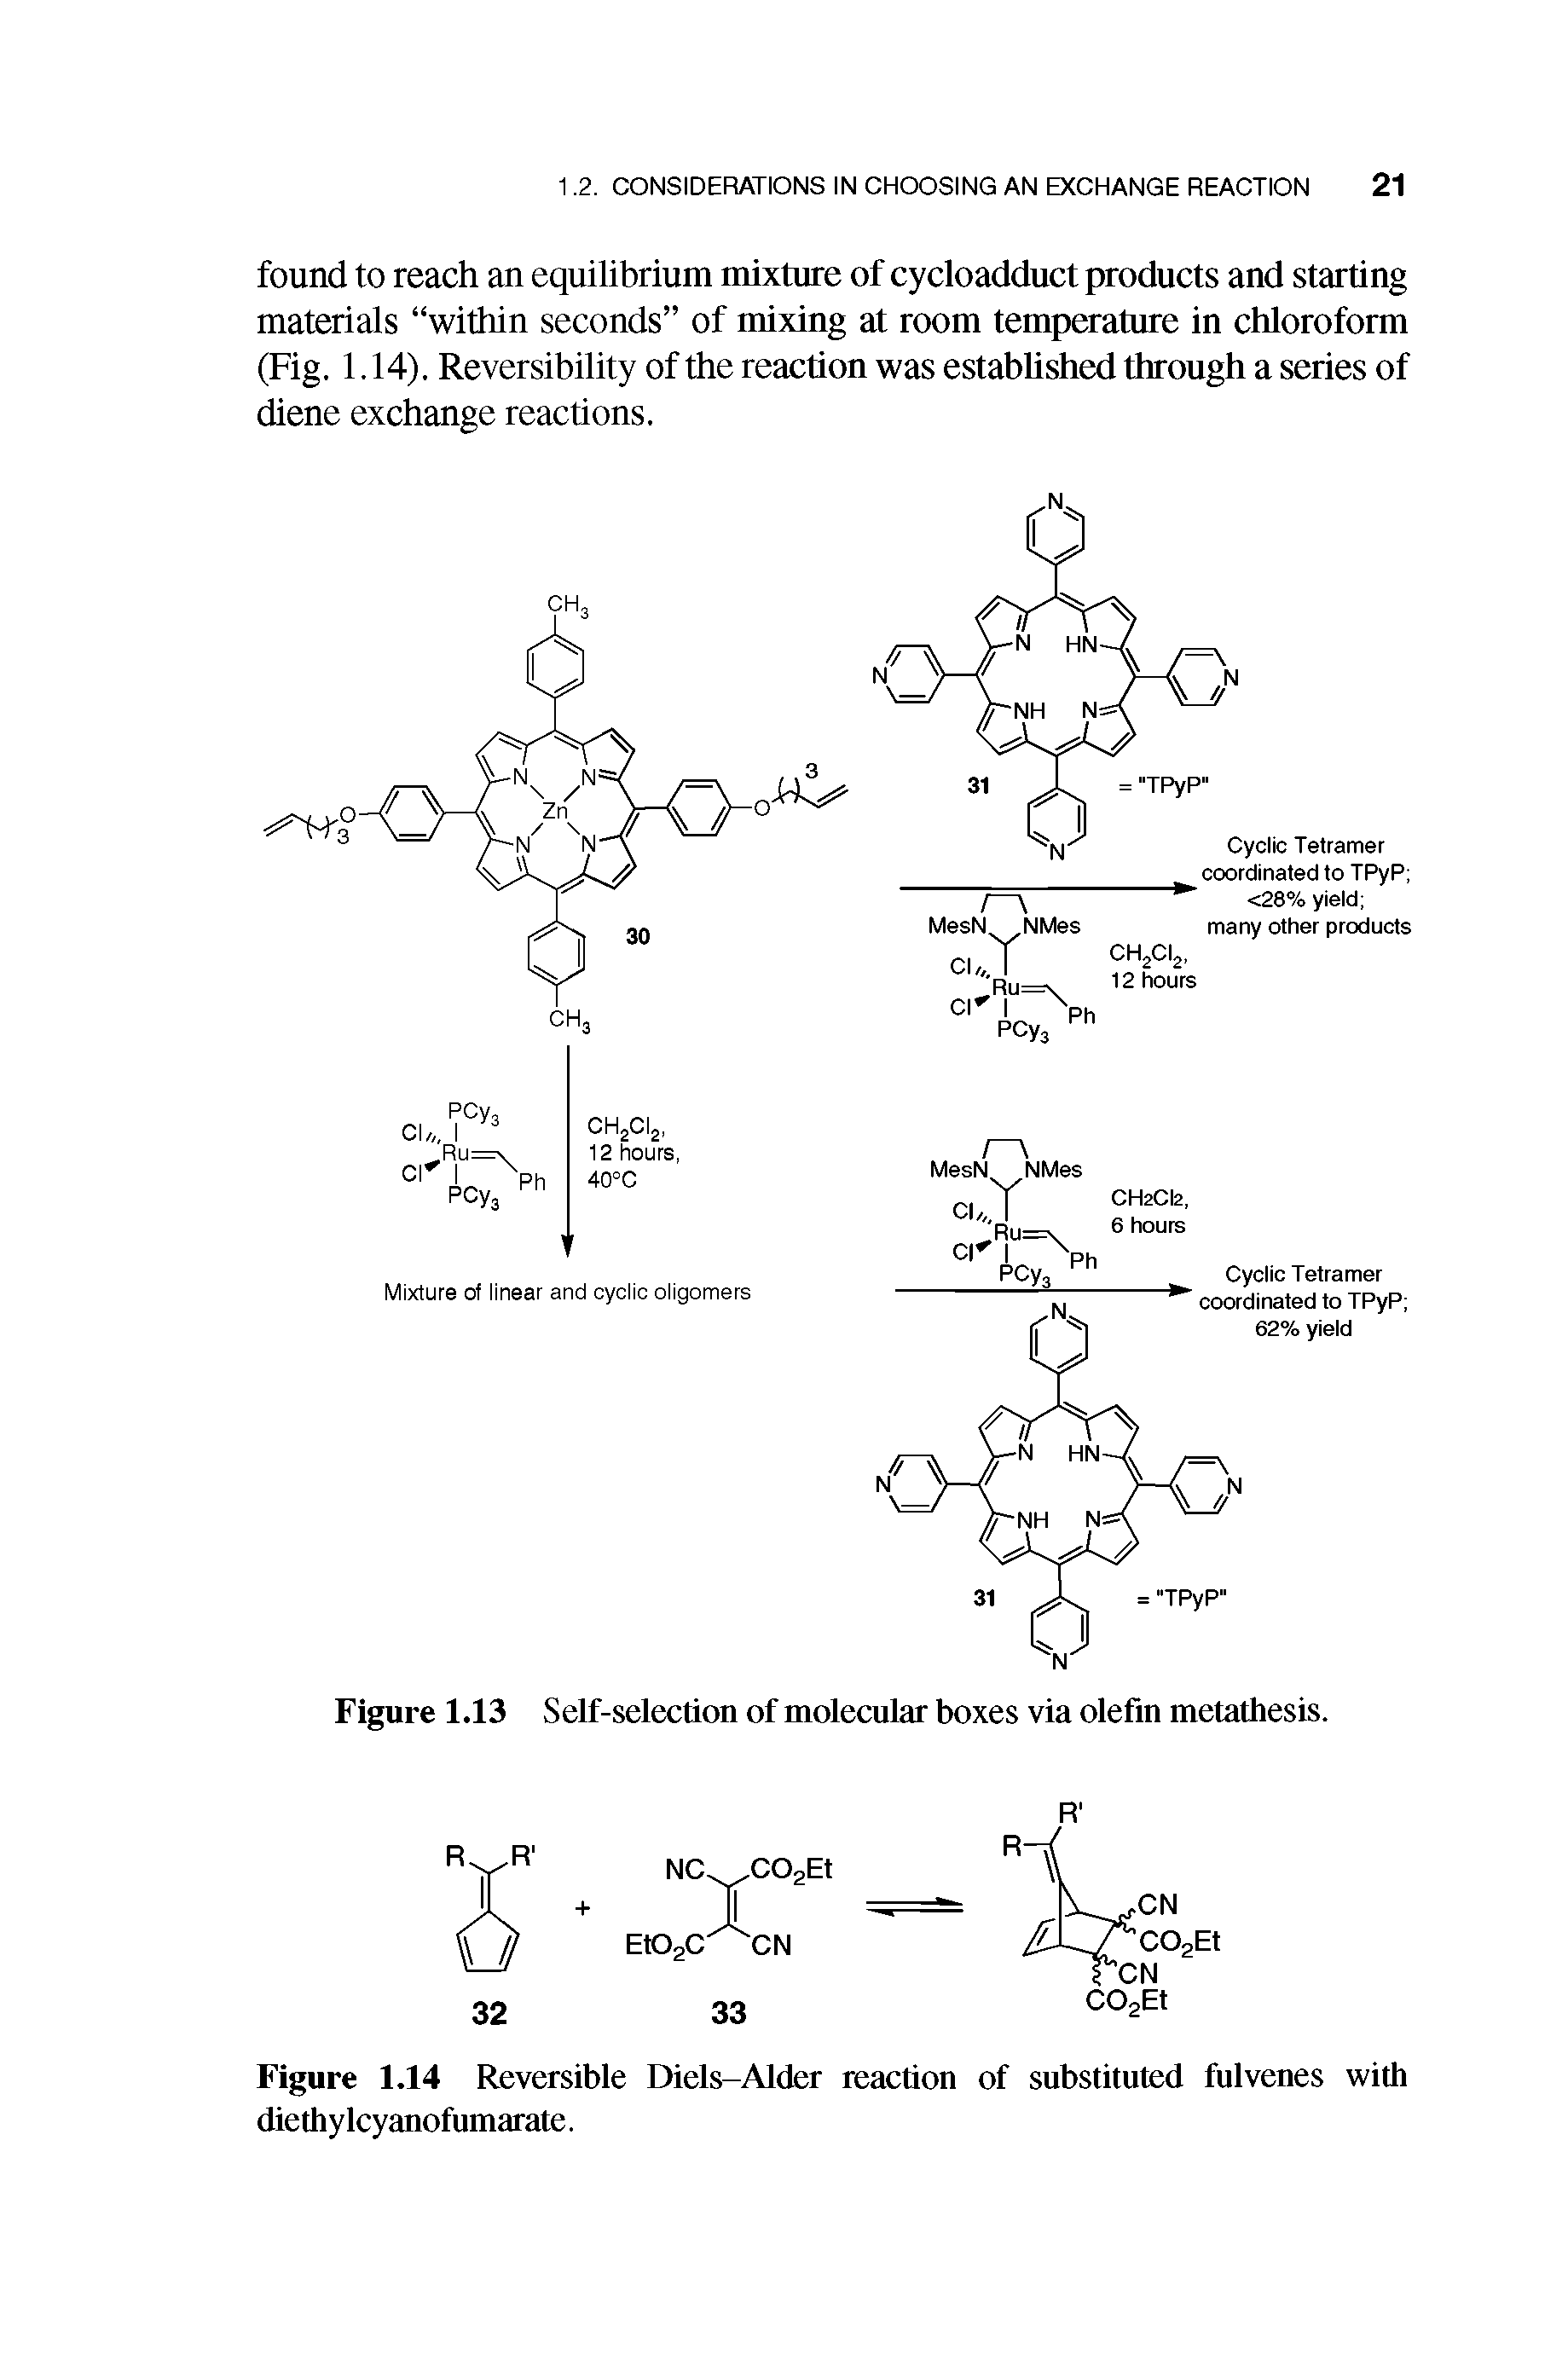 Figure 1.14 Reversible Diels-Alder reaction of substituted fulvenes with diethy Icyanofumarate.